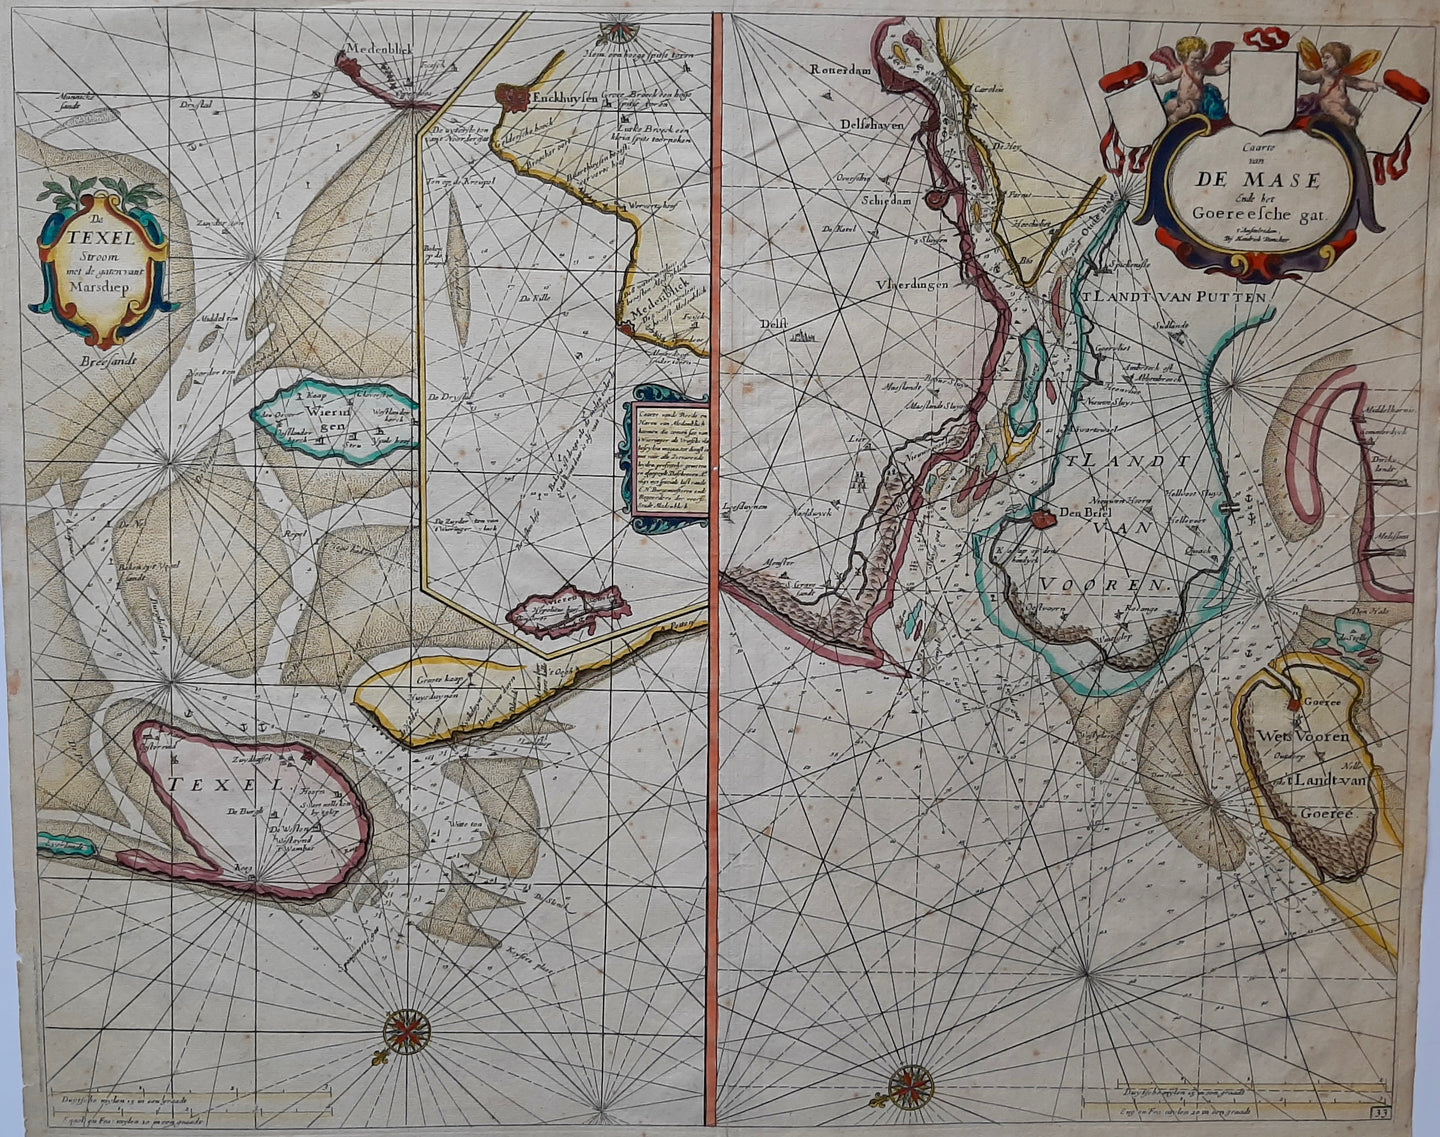 Texel Maas Rotterdam Voorne-Putten Zeekaart - H Doncker - 1686